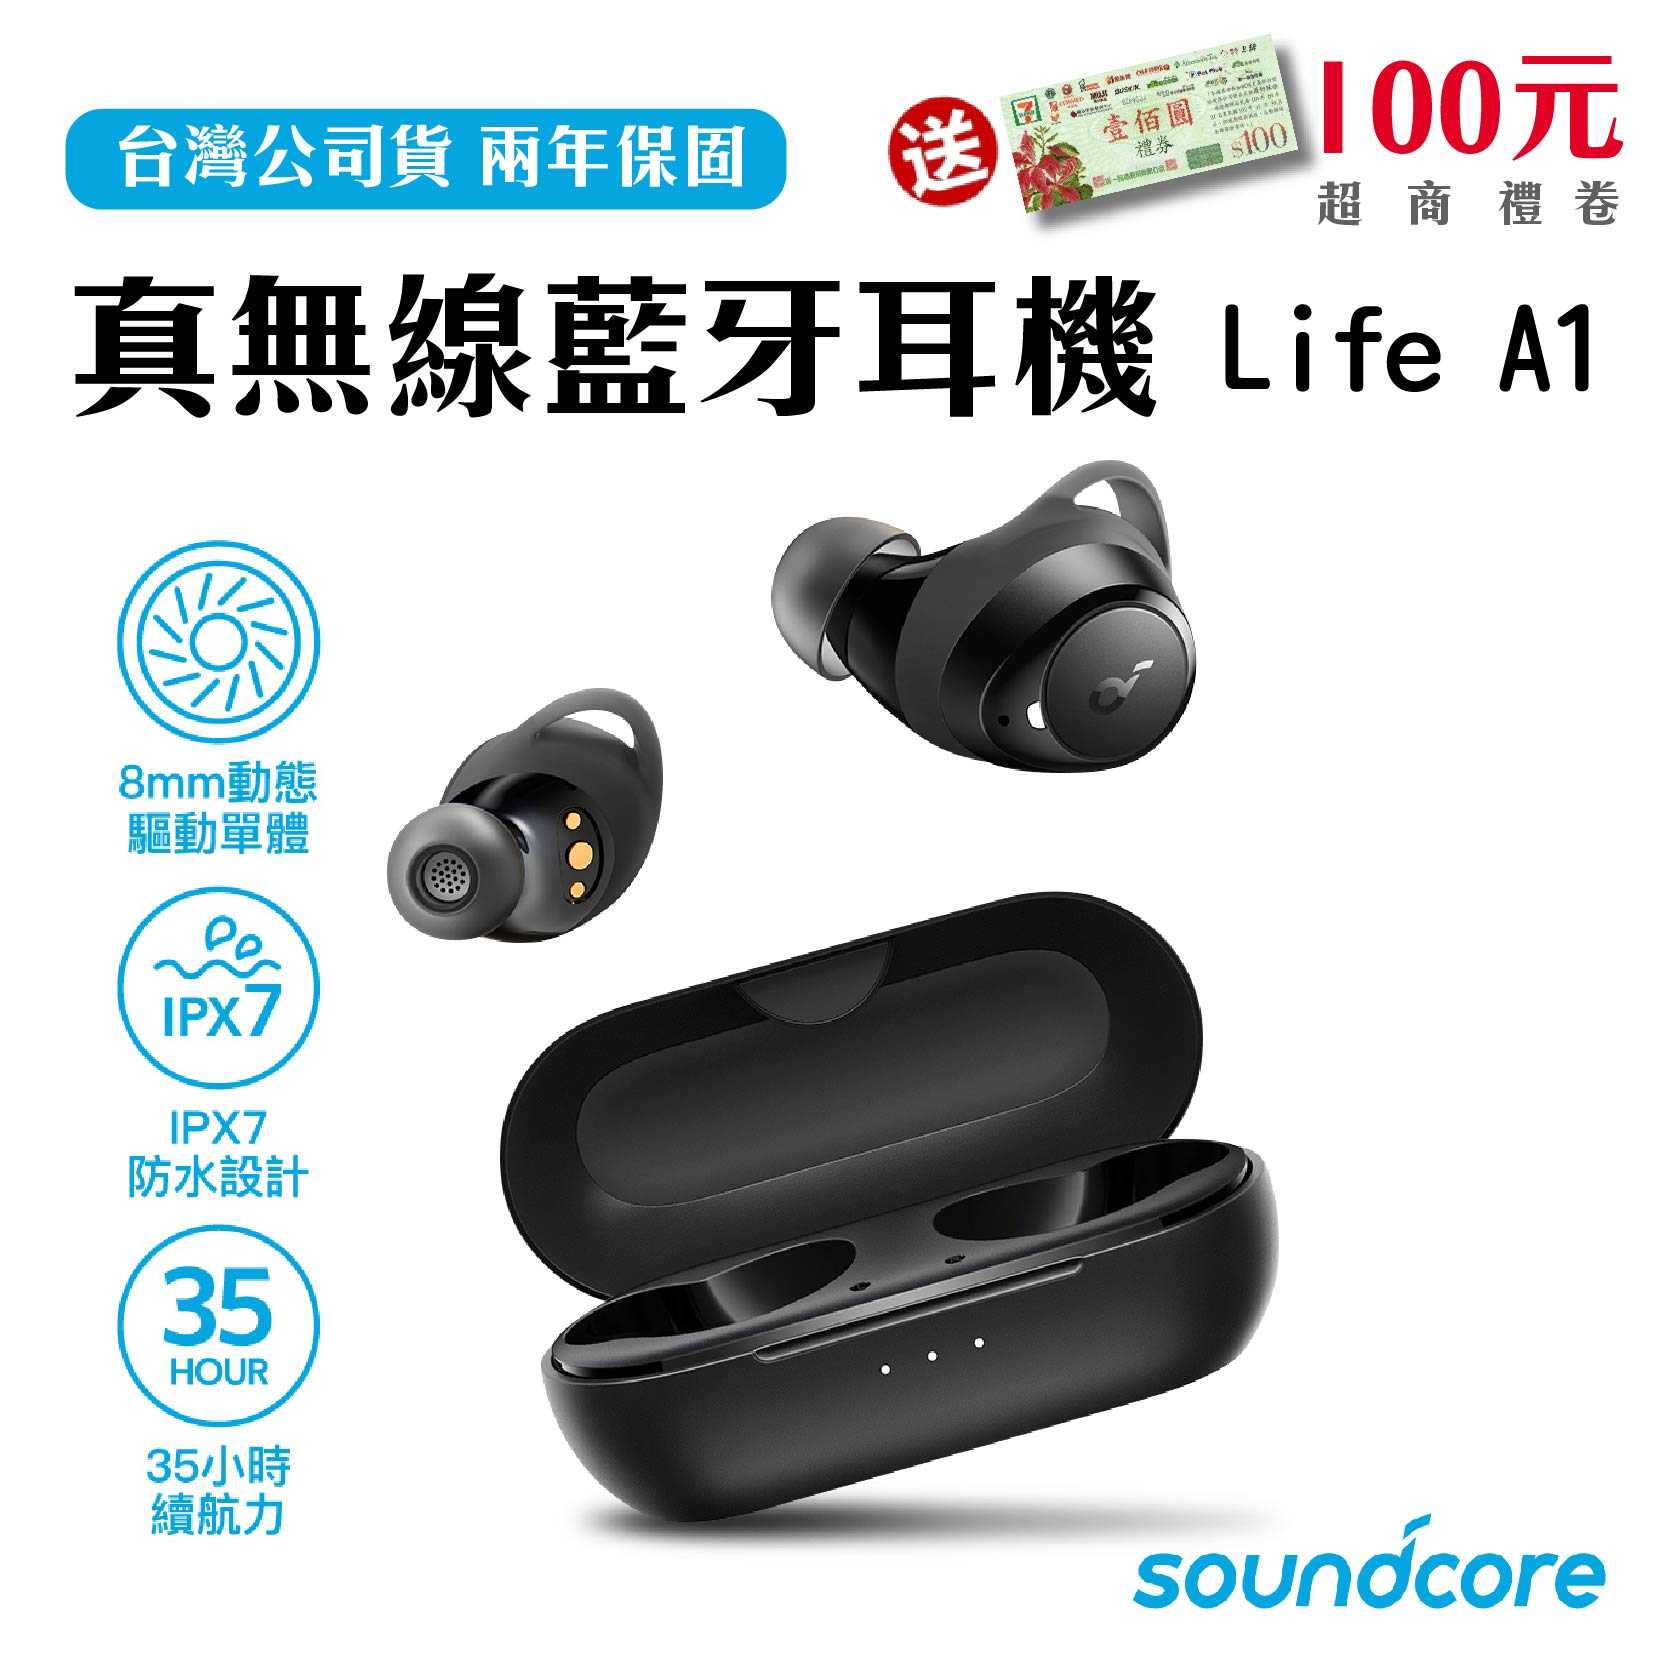 送100元禮券『Anker Soundcore Life A1 真無線藍牙耳機』 兩年保固 台灣公司貨